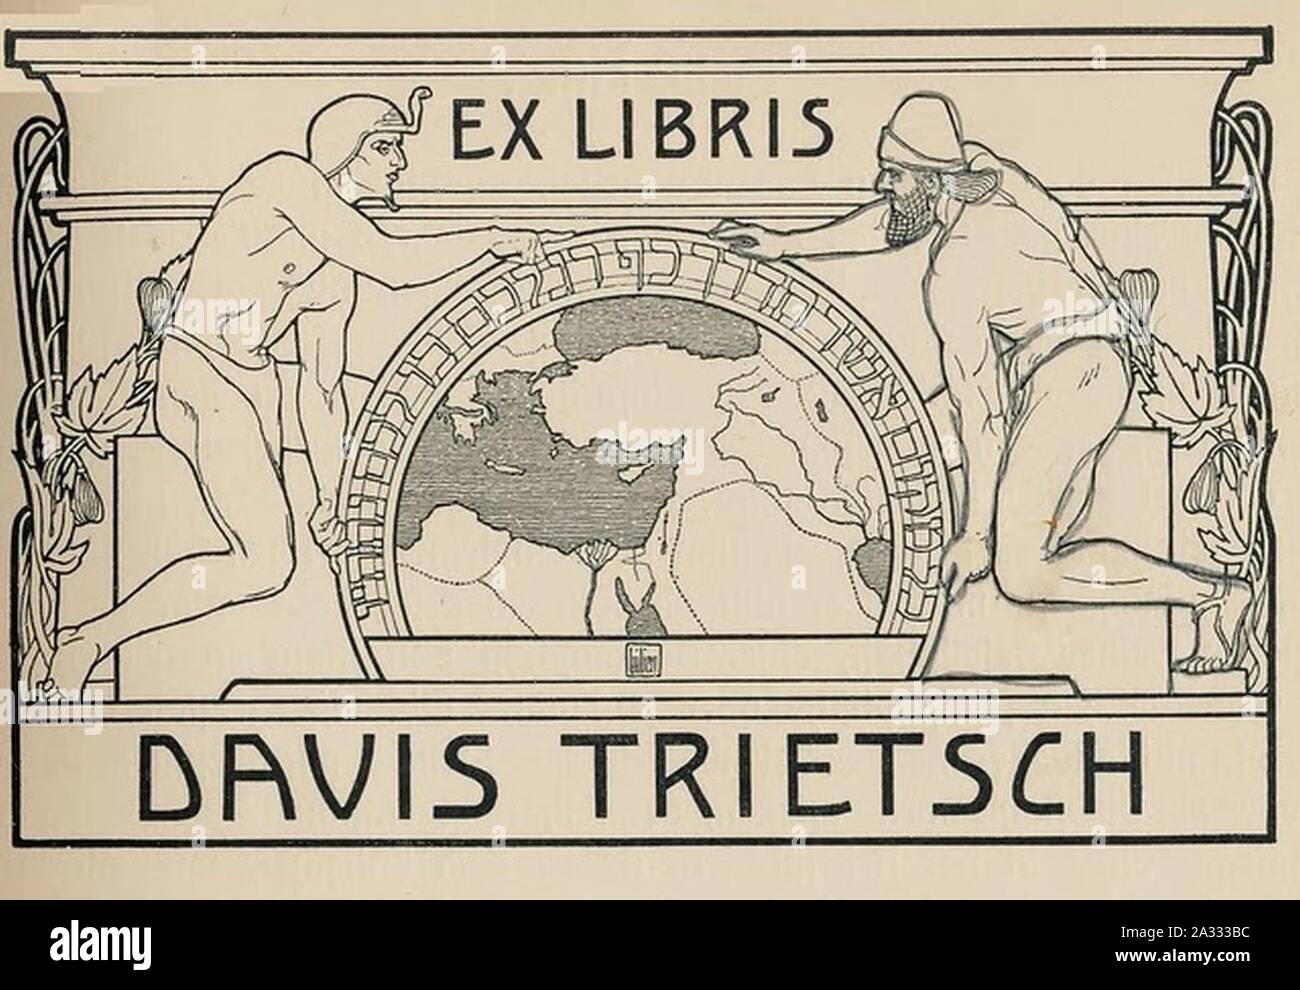 Ex Libris Davis. Trietch Banque D'Images